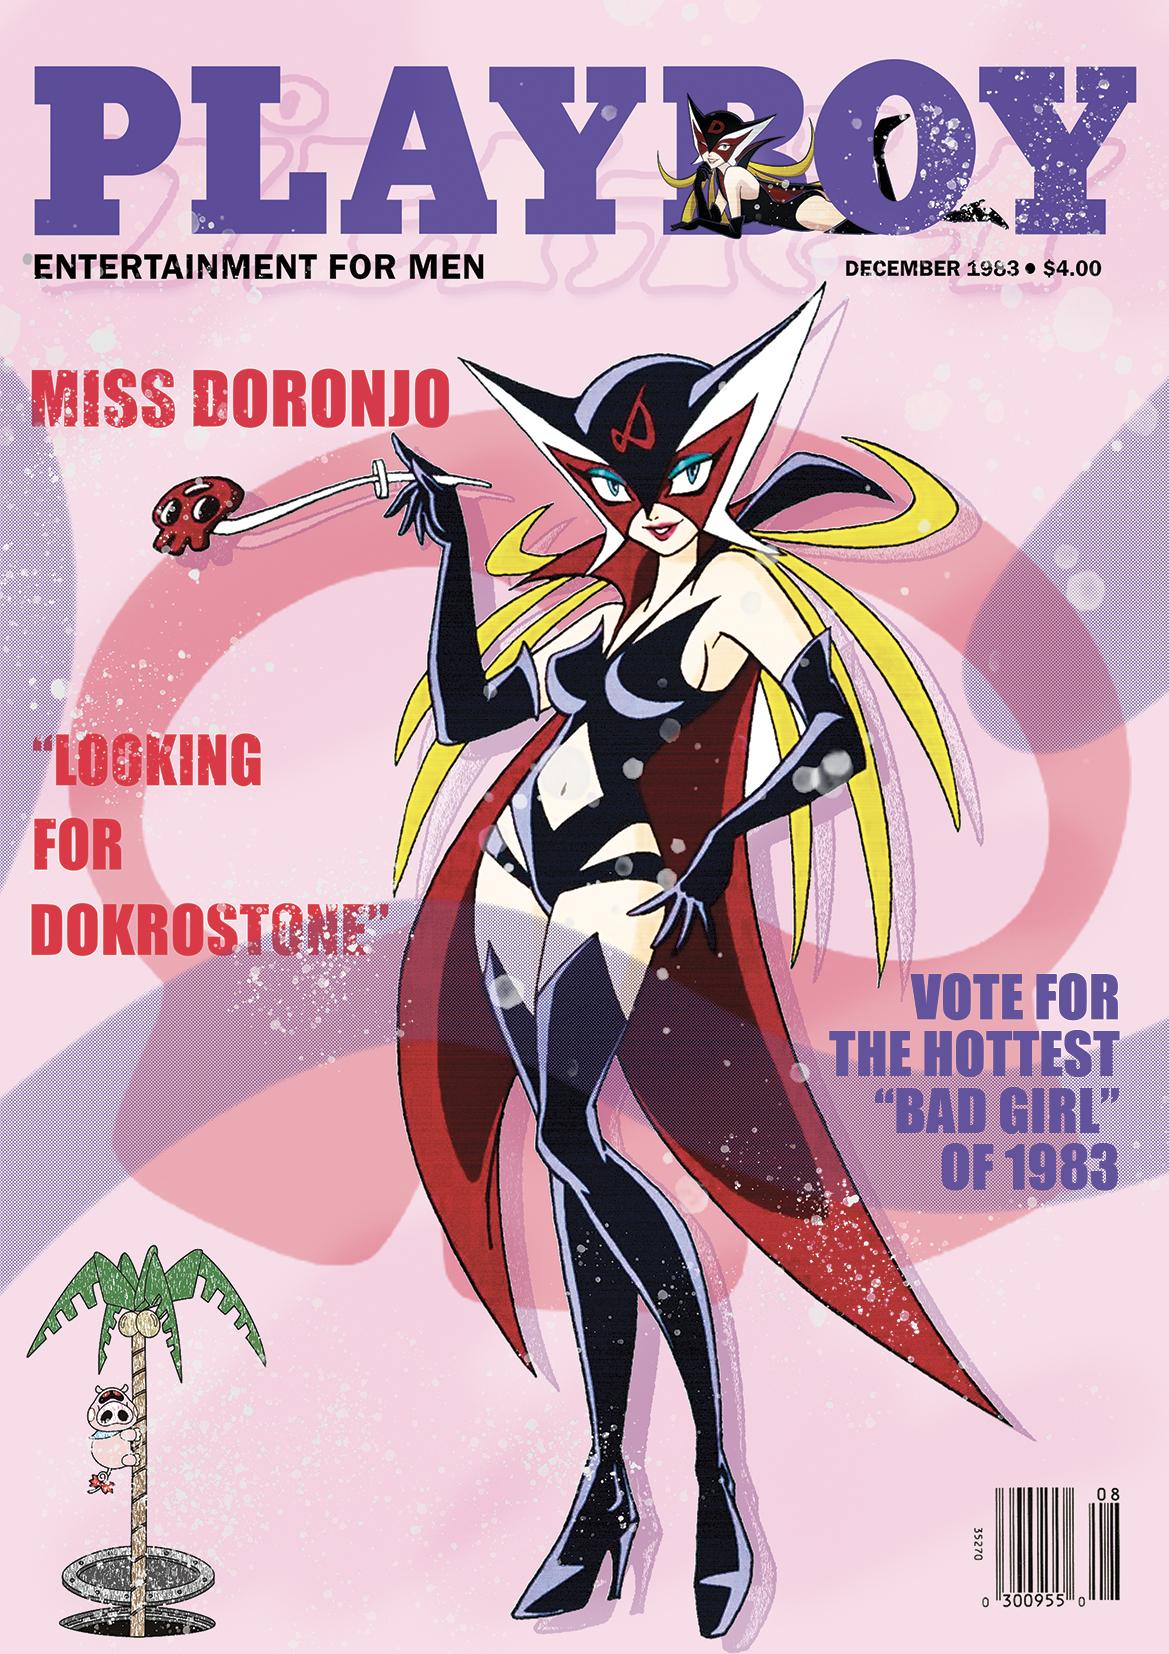 Miss Doronjo cover girl 1983